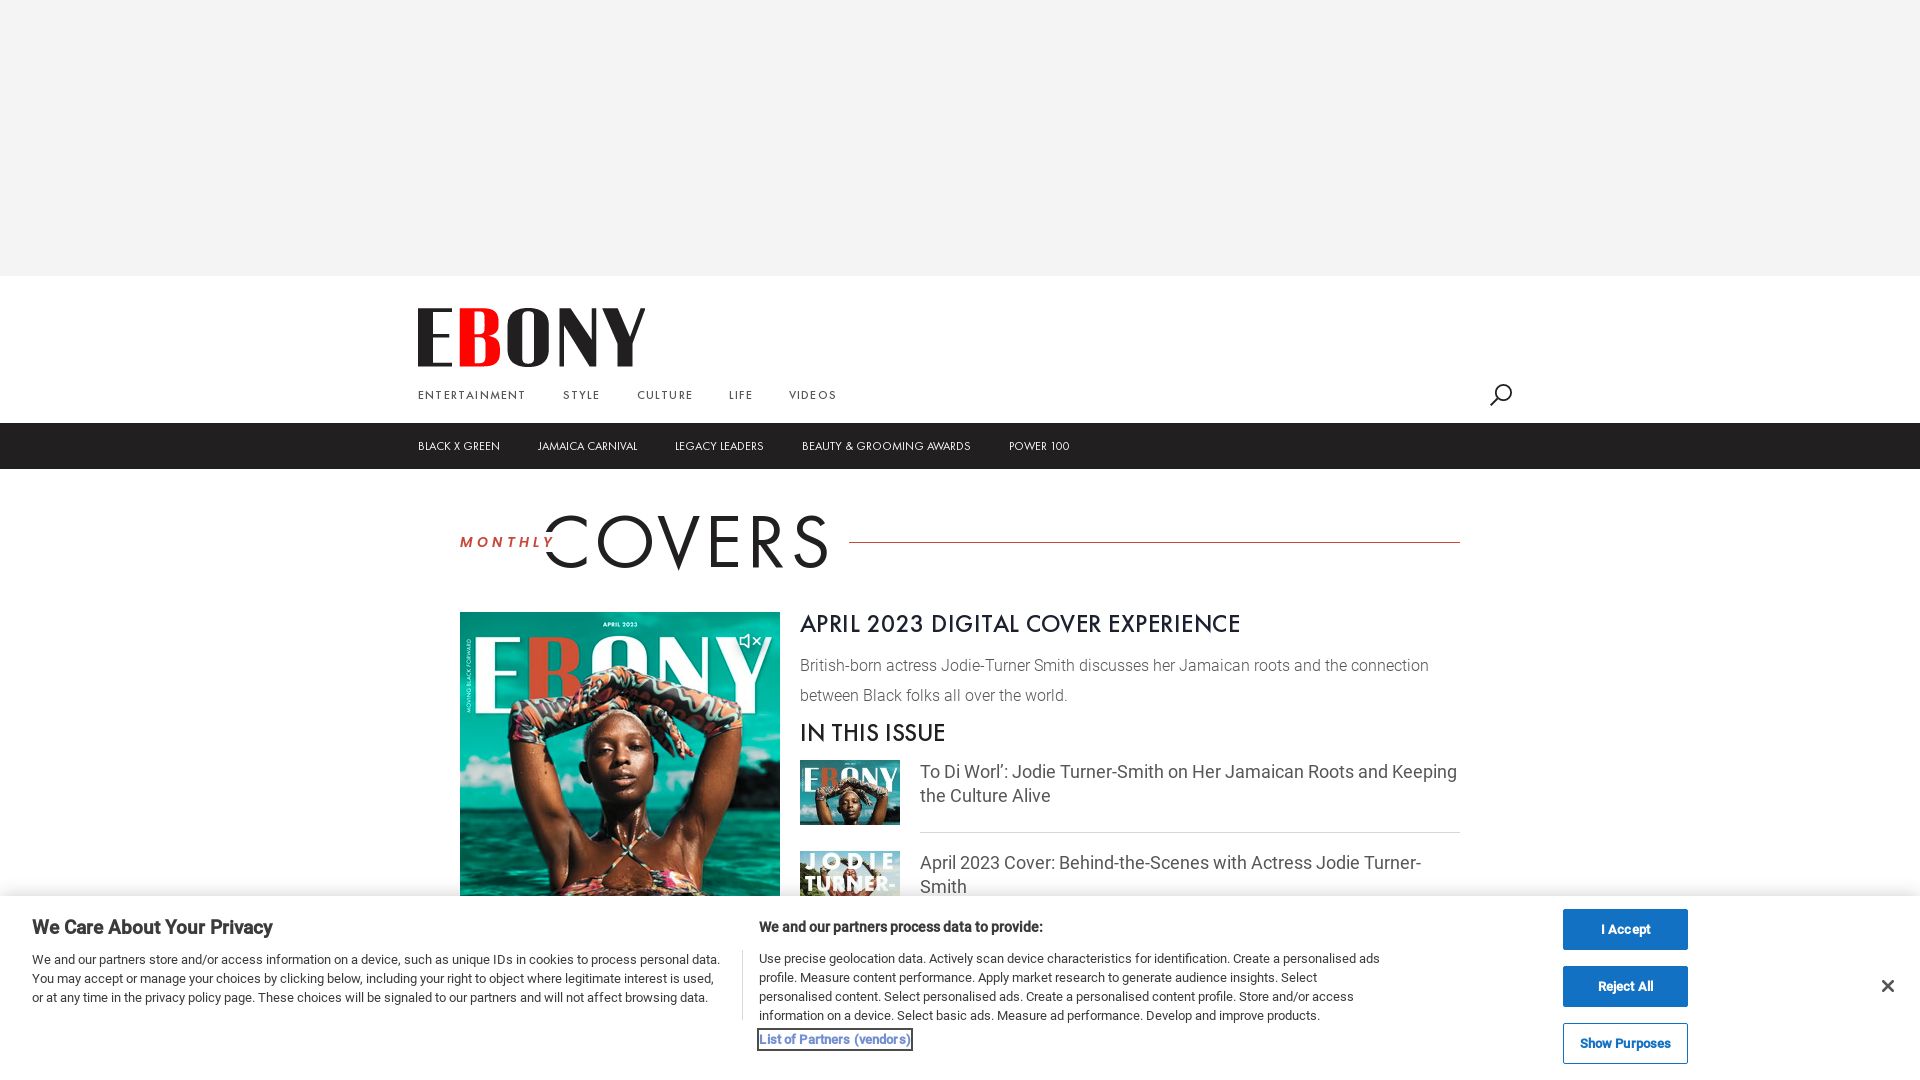 Stato del sito web ebony.com è   ONLINE